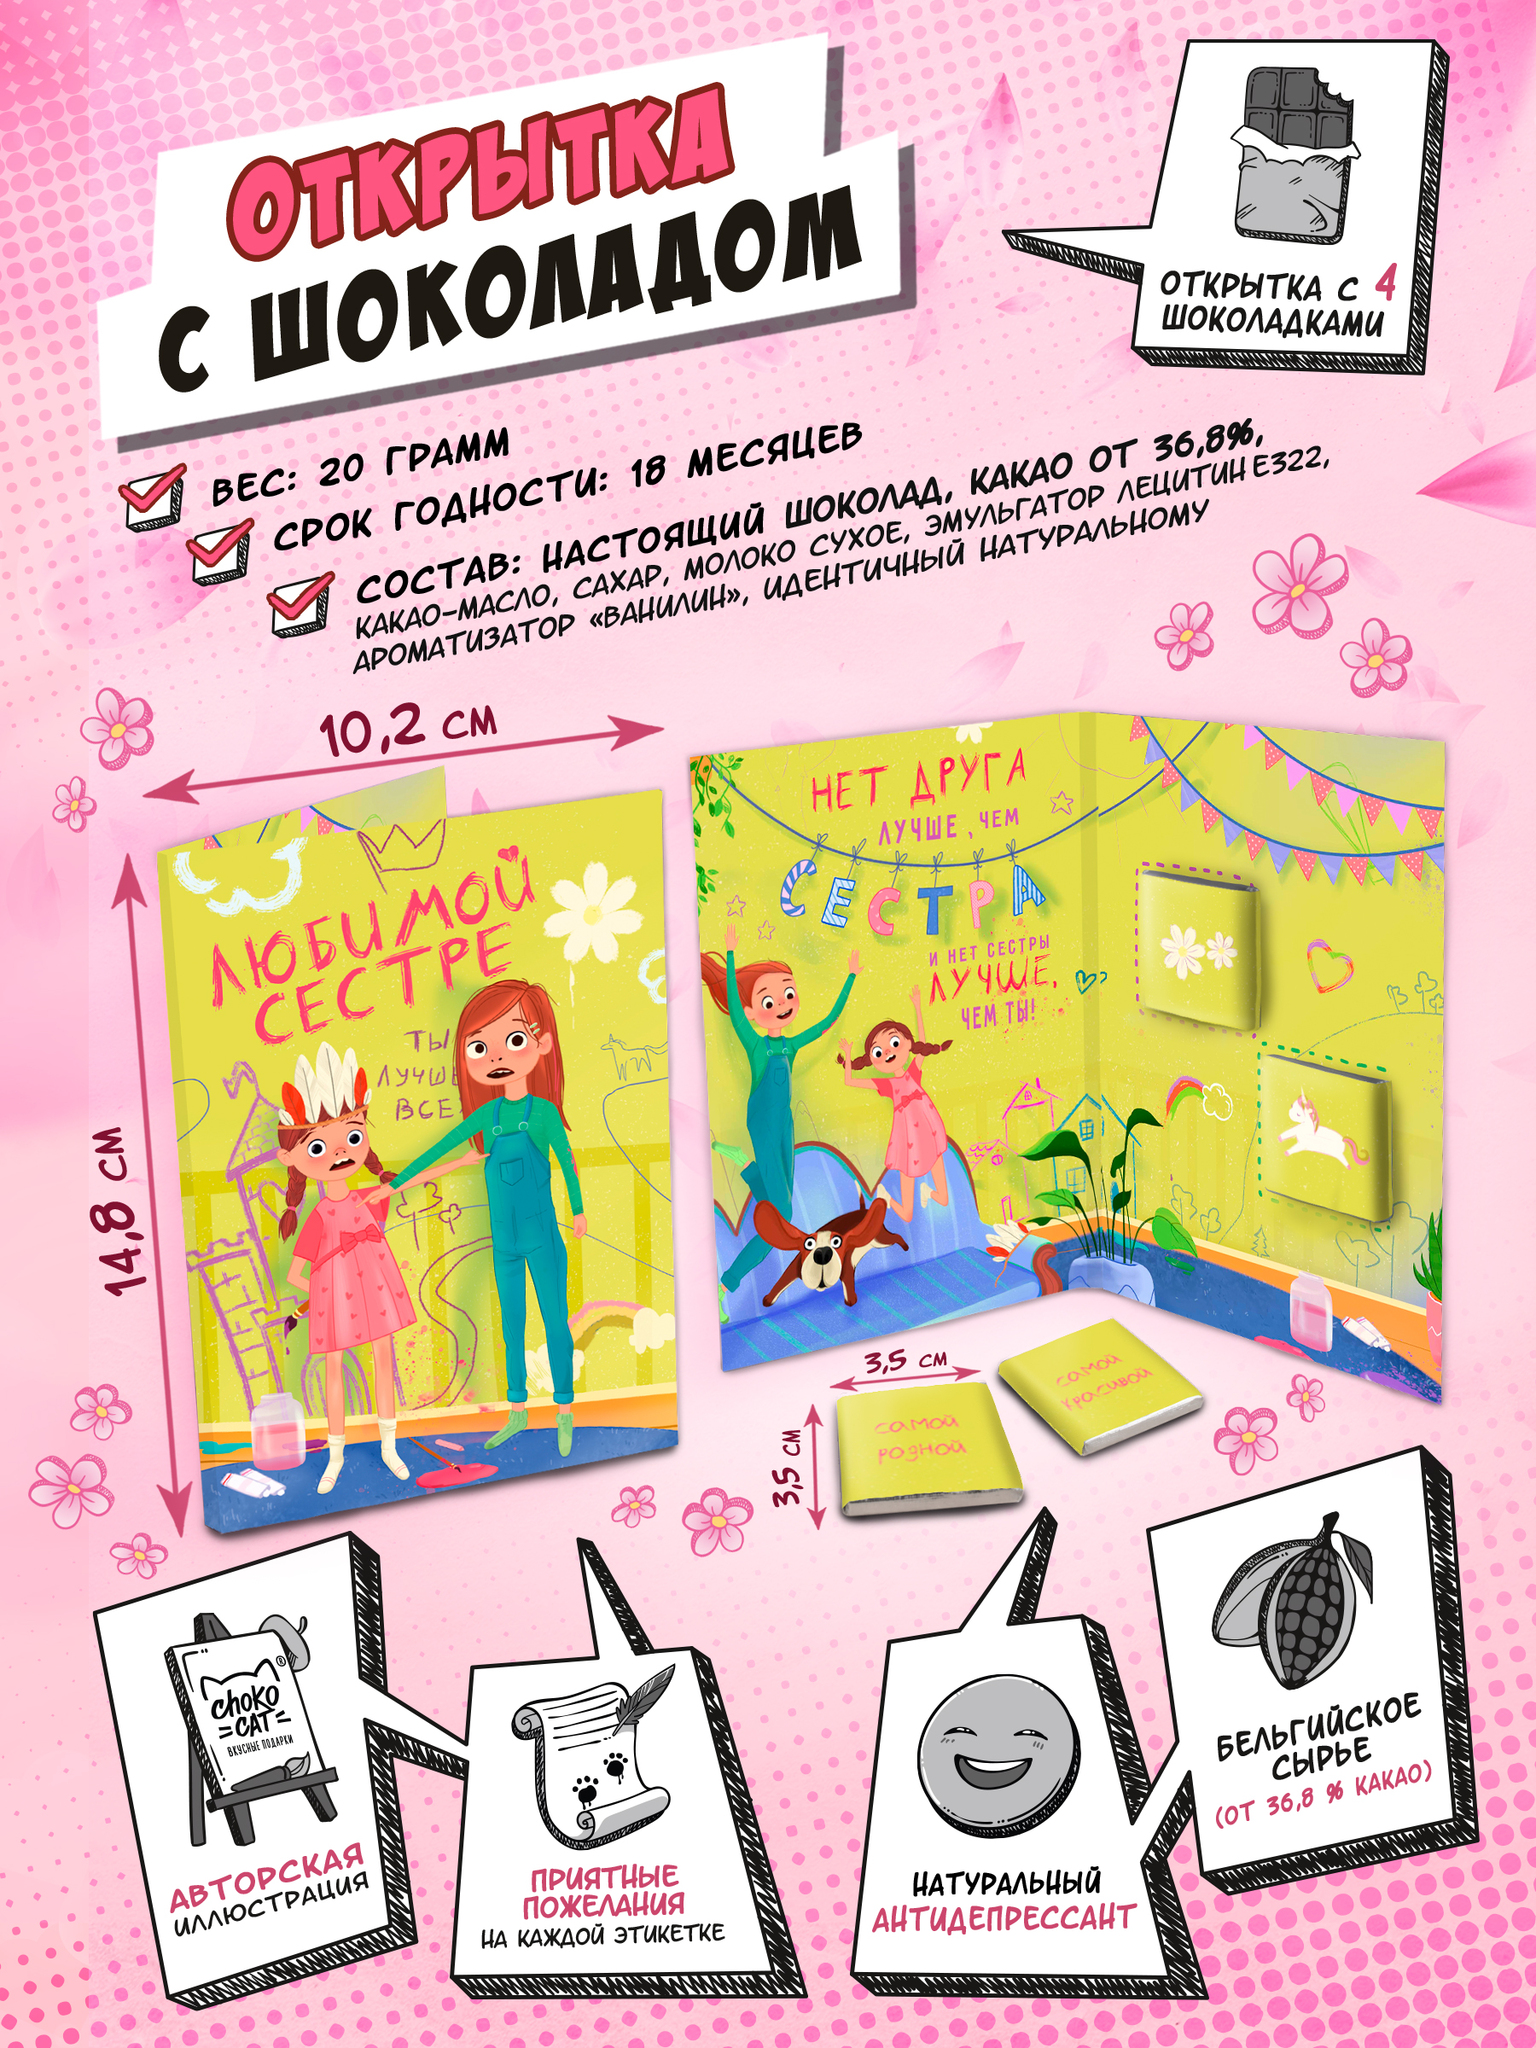 Шоколад для двоих «Подарок, который ты заслужил» — купить в Москве в интернет-магазине жк-вершина-сайт.рф